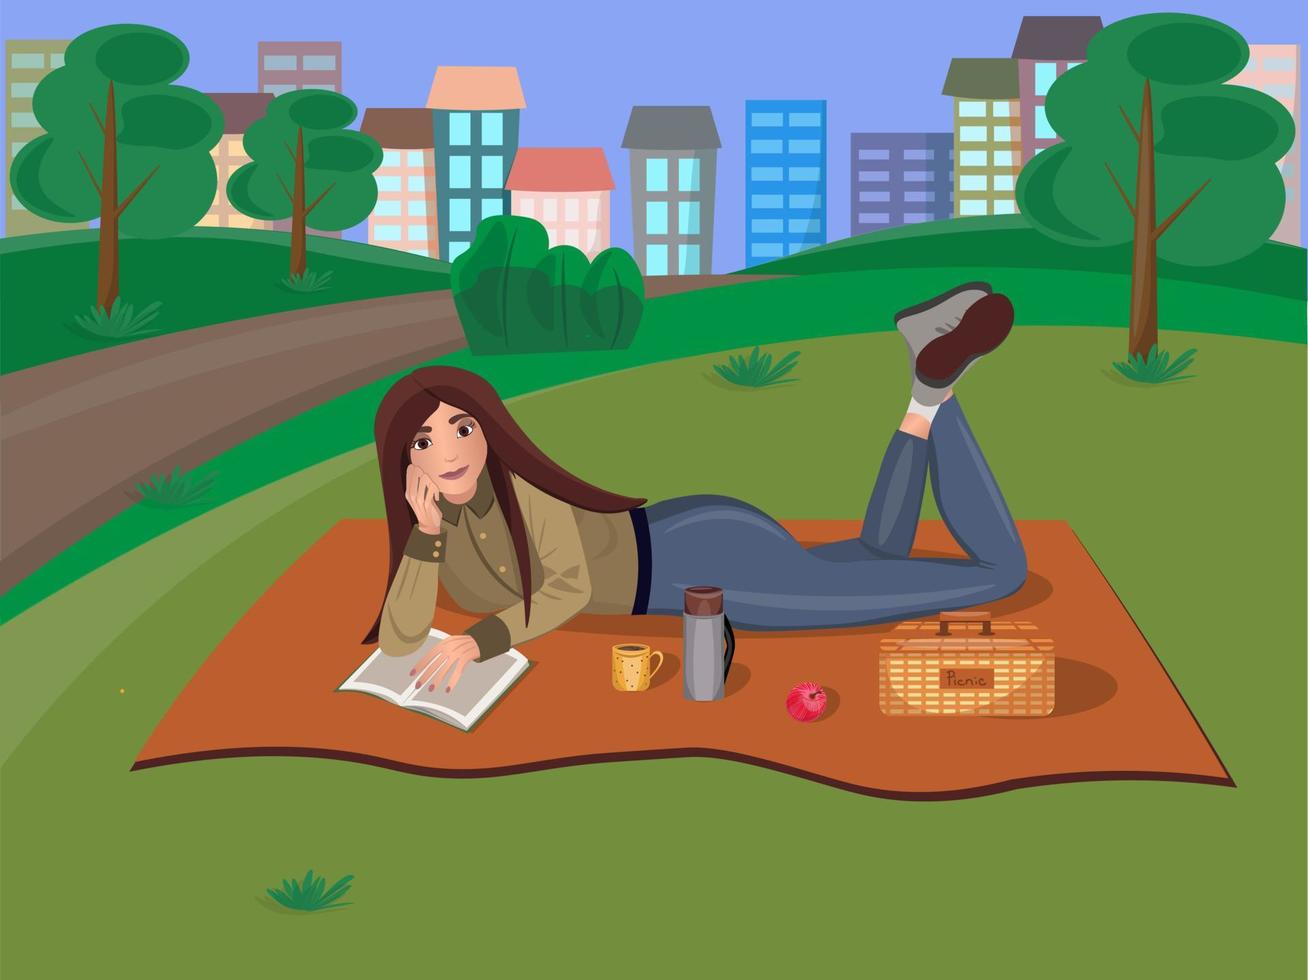 meisje op de picknick. vrouw leest een boek in het park op het gras tegen de achtergrond van de stad. vlakbij is een picknickmand, thermoskan, mok en appel. vectorillustratie in platte cartoonstijl vector